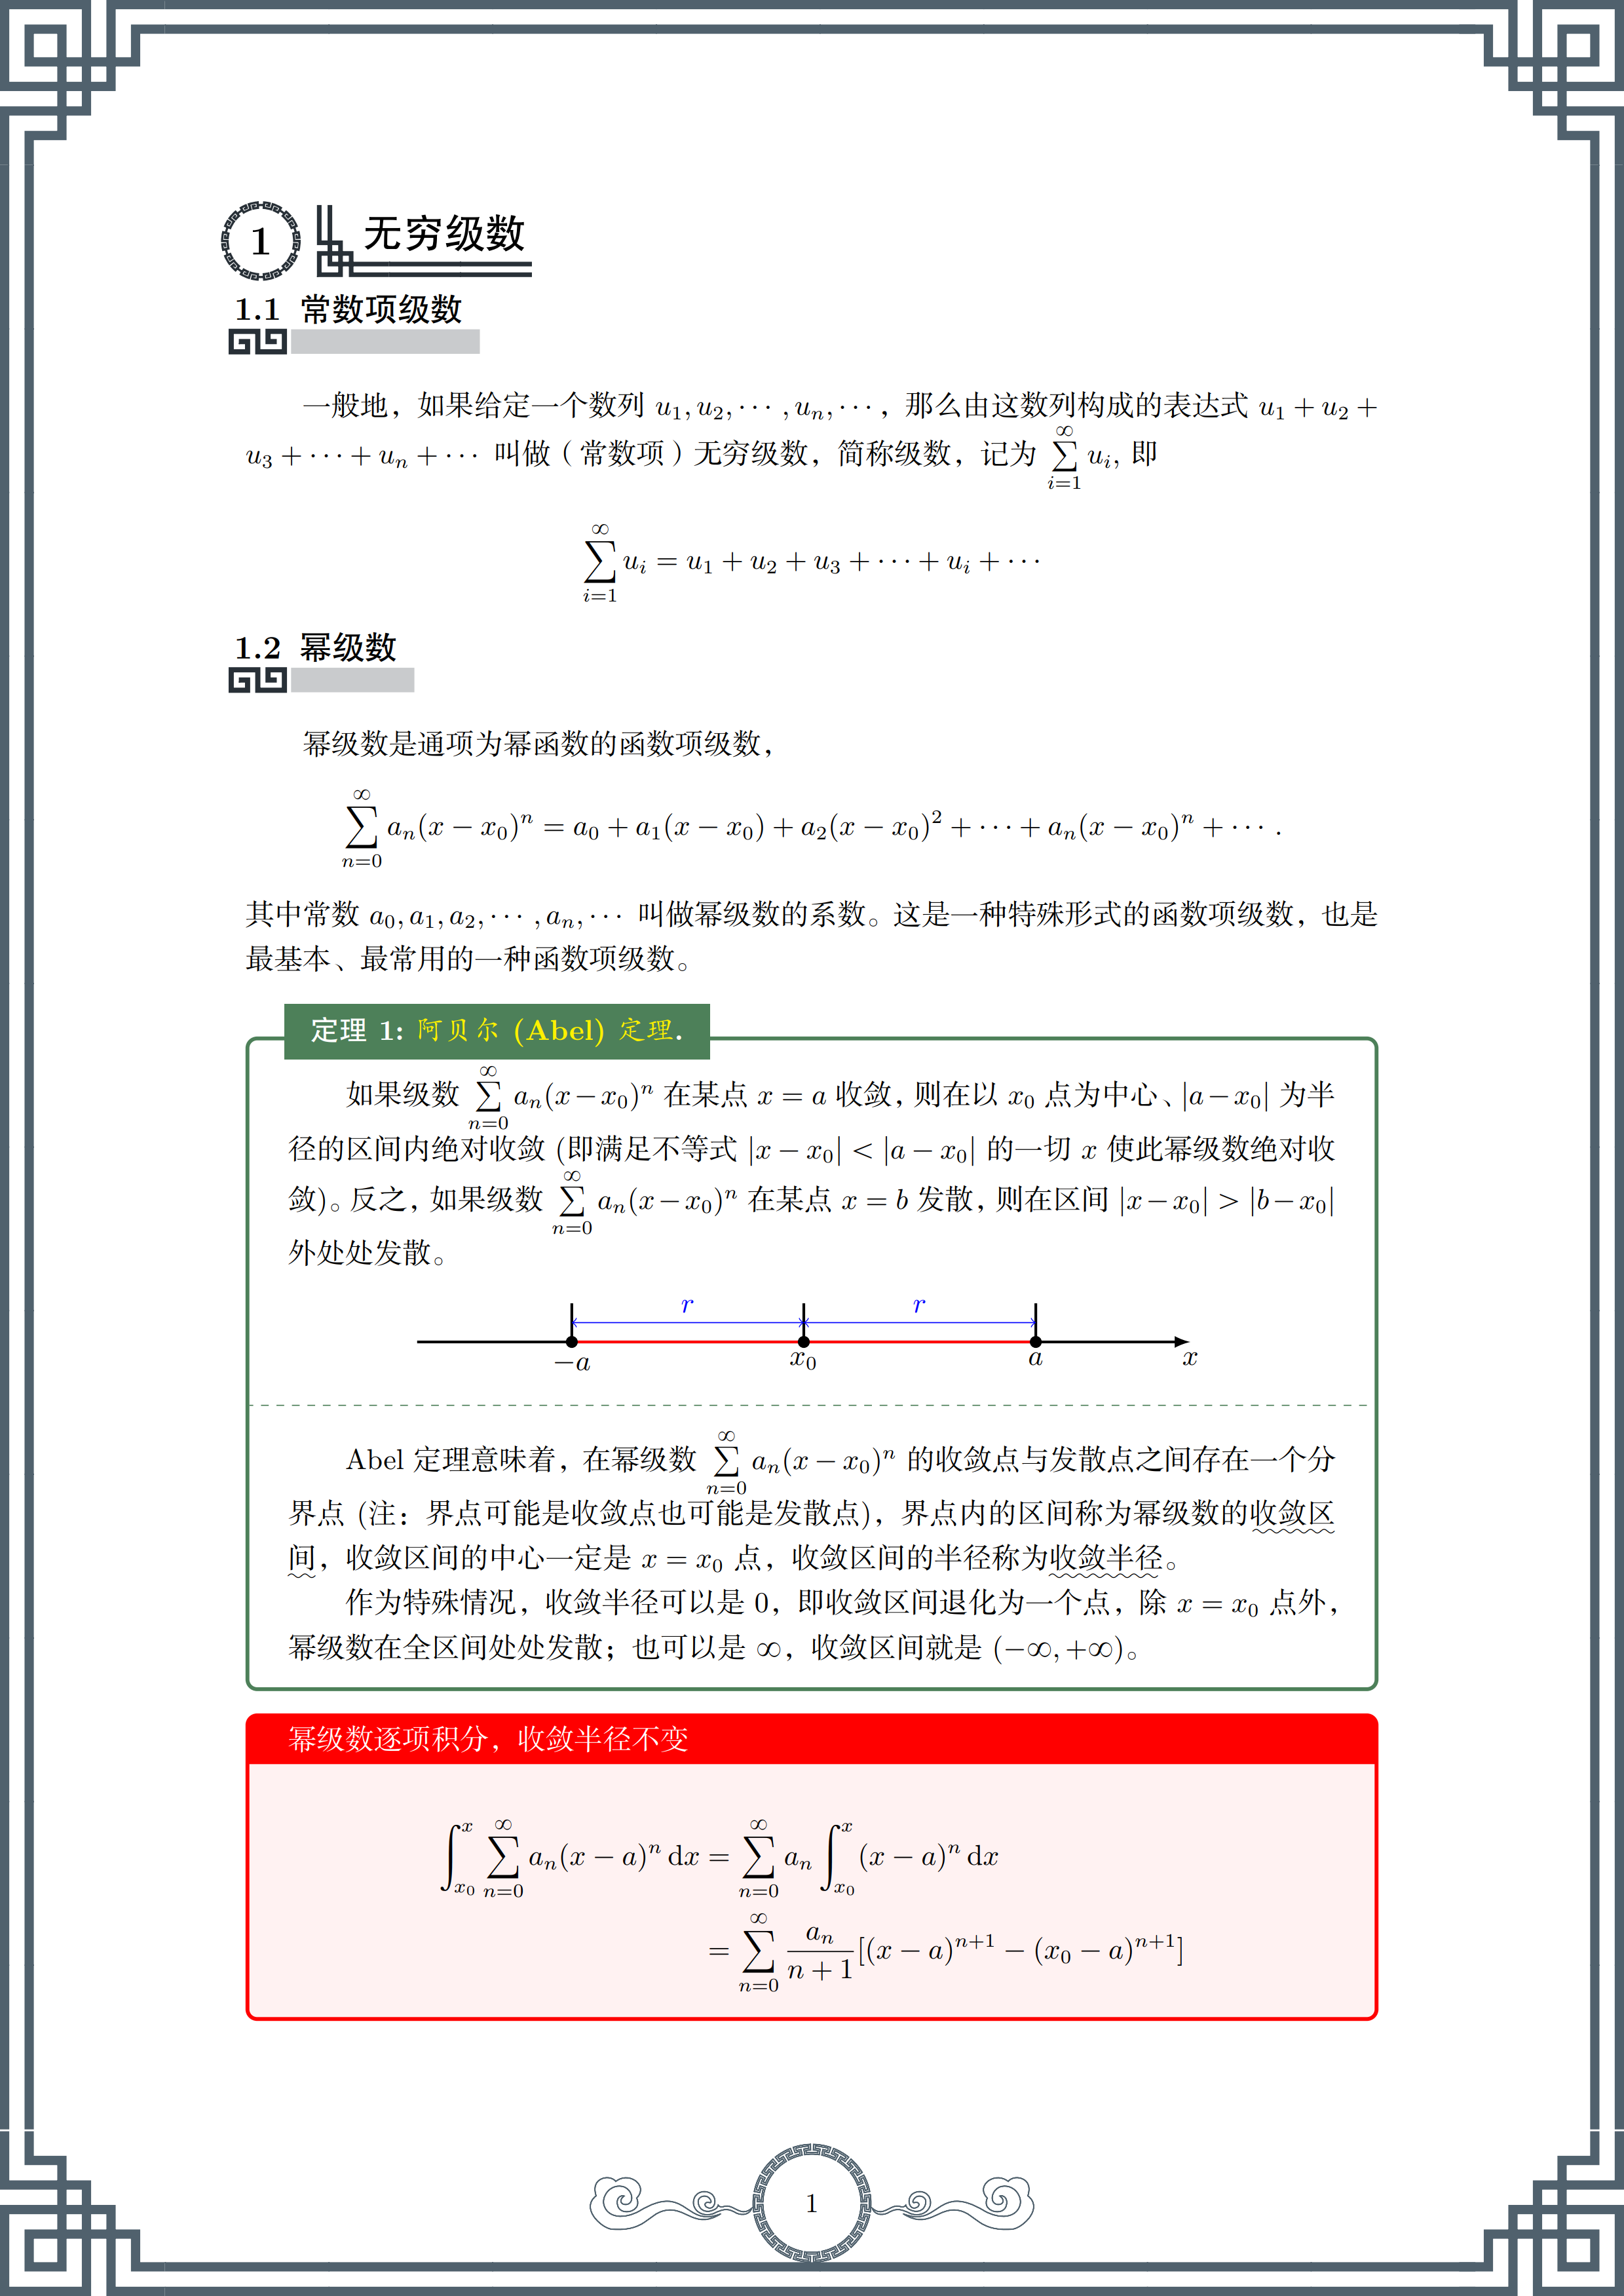 用TikZ绘制的一个具有中国风（基于pgfornament-han宏包）的笔记模板